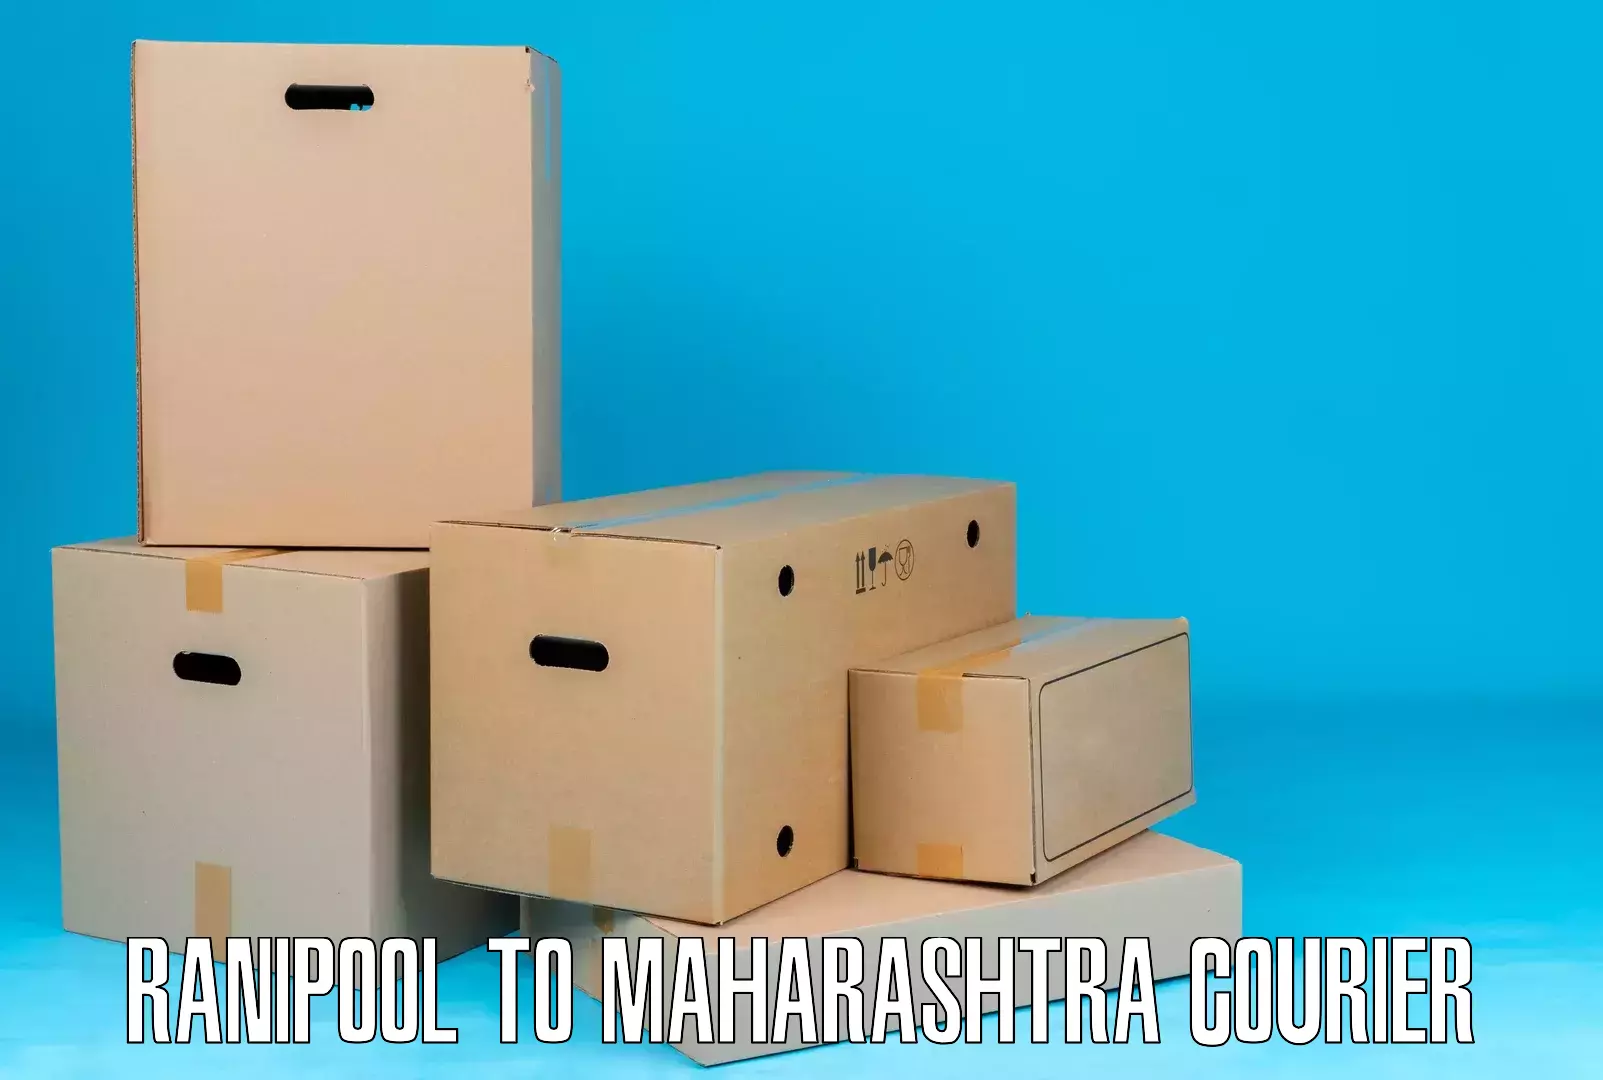 Express postal services Ranipool to Maharashtra